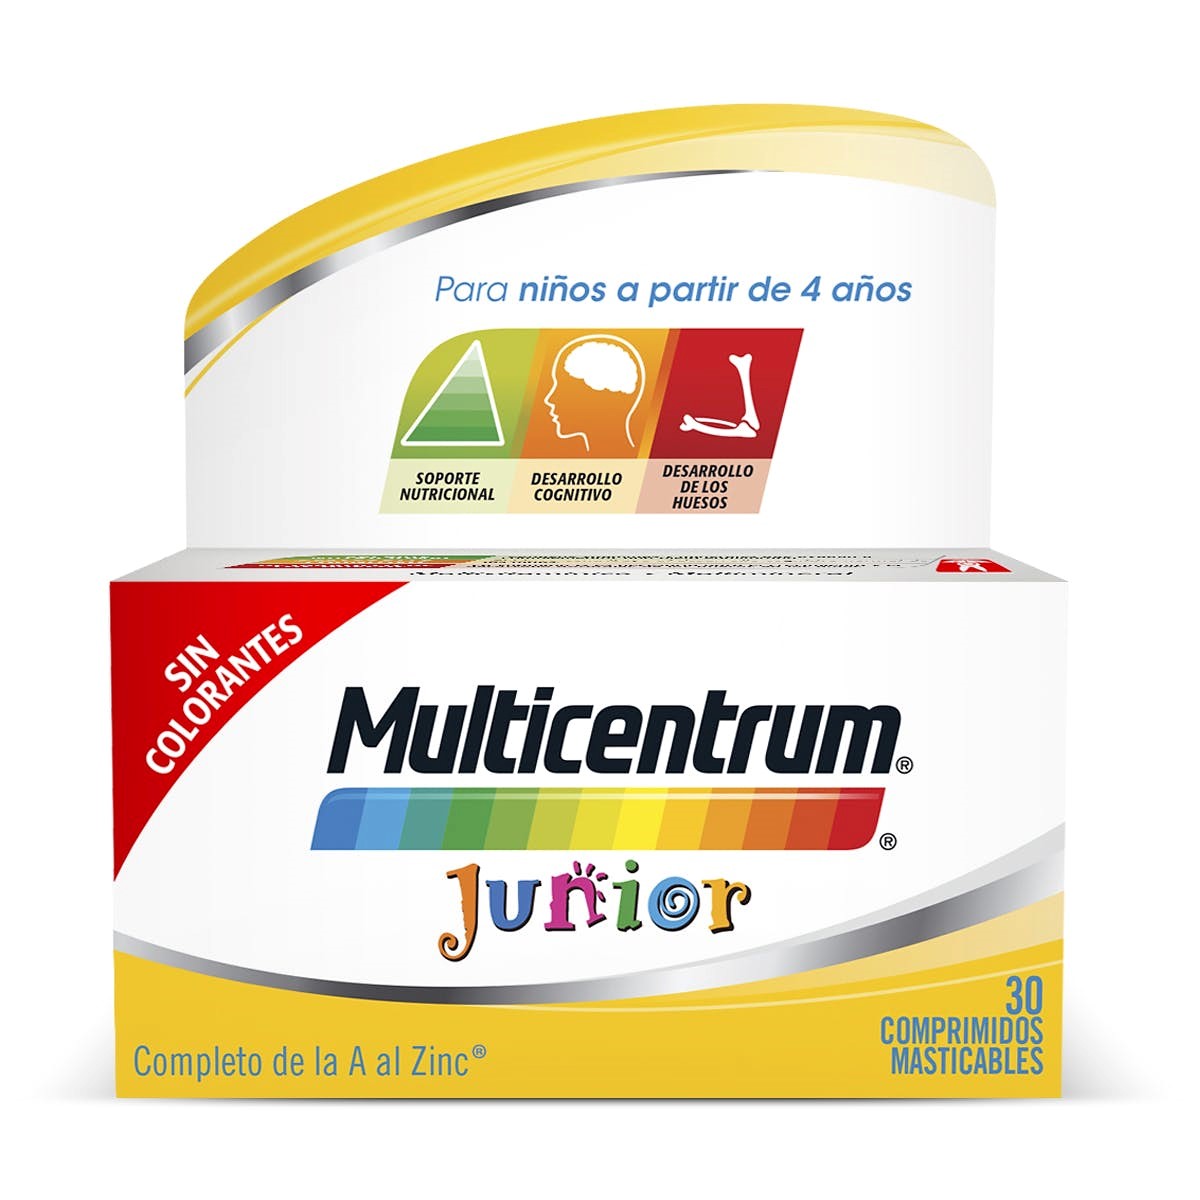 Multicentrum Junior beneficios: Soporte nutricional, Desarrollo Cognitivo y Desarrollo de los Huesos